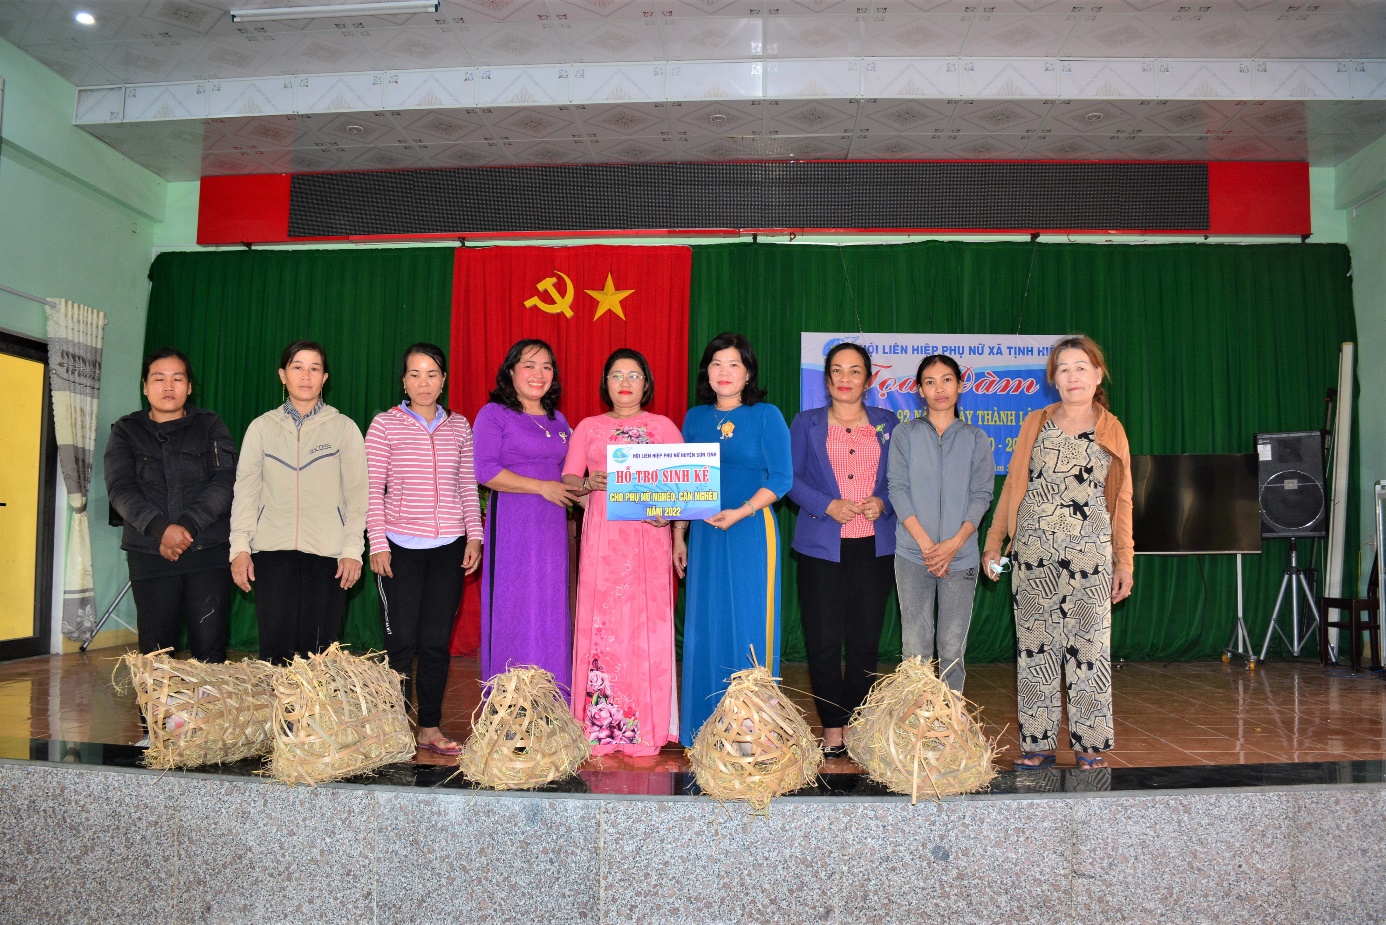 Phụ nữ Sơn Tịnh trao phương tiện sinh kế cho phụ nữ nghèo và nhận đỡ đầu trẻ mồ côi tại xã Tịnh Hiệp